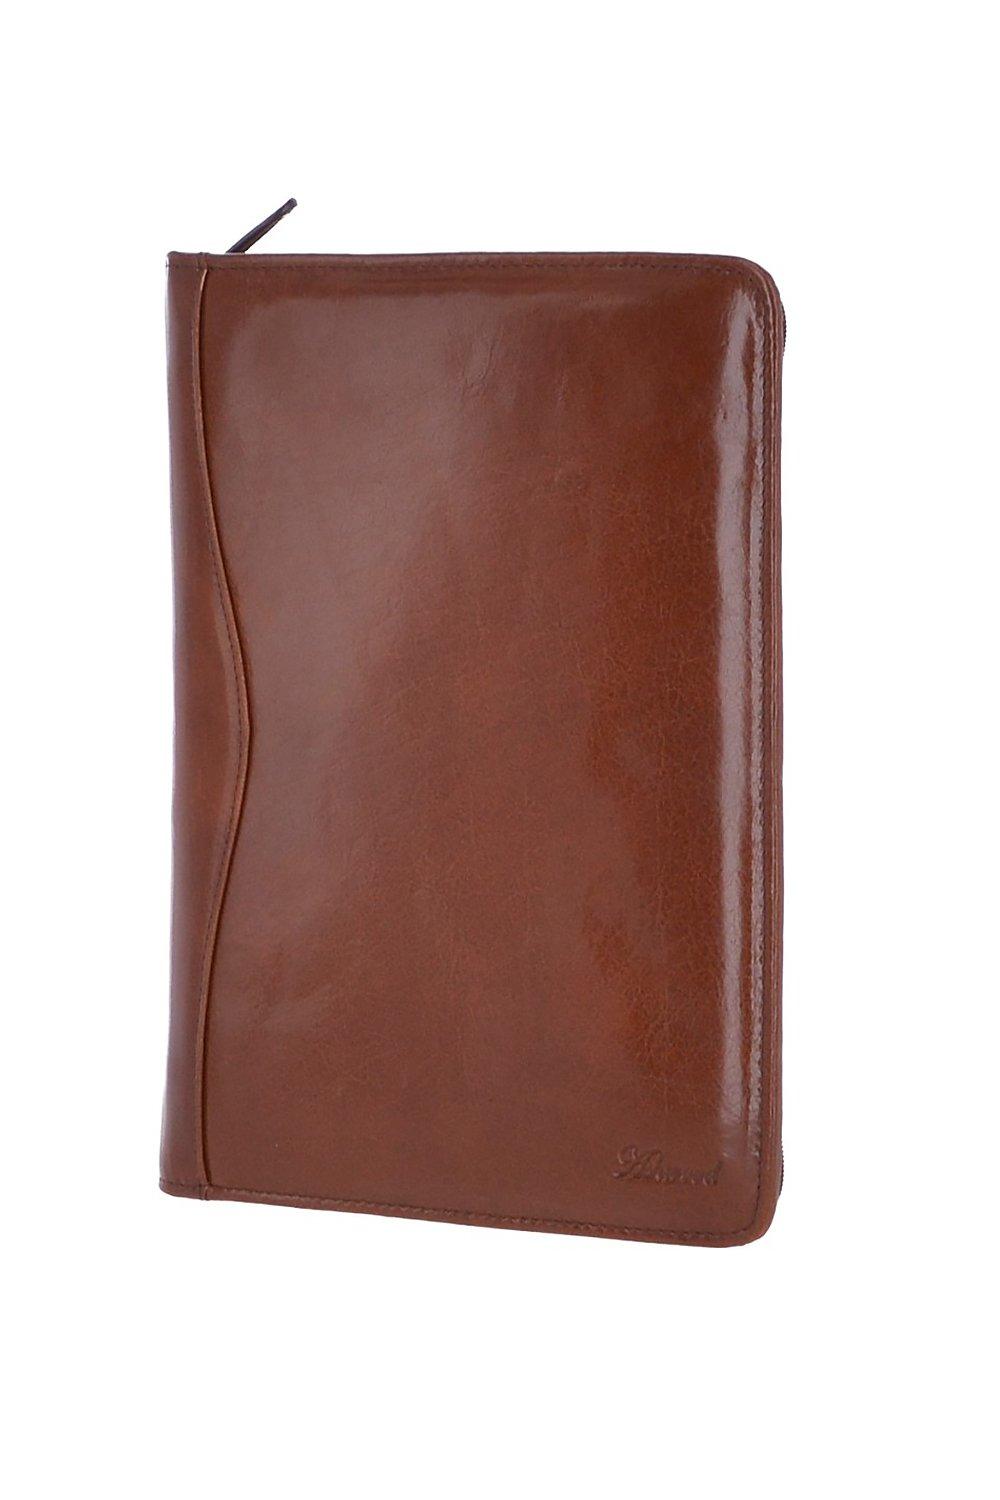 Держатель для документов из натуральной кожи формата А4 Ashwood Leather, коричневый